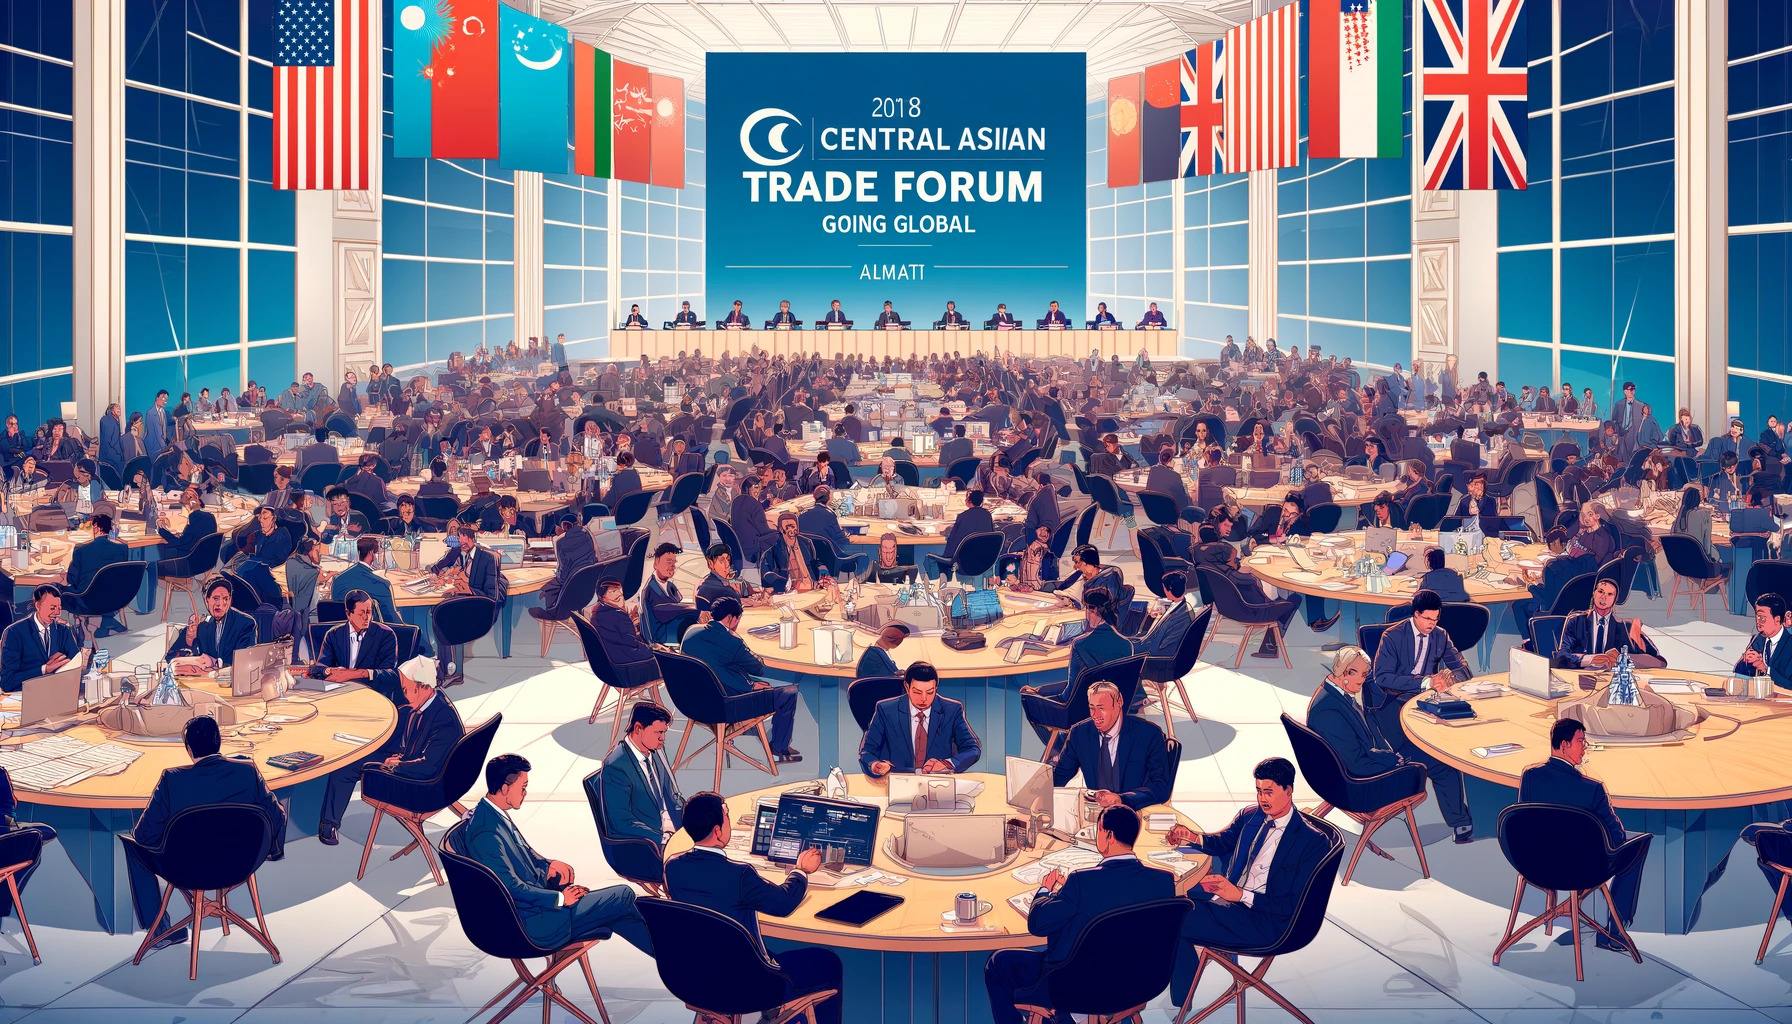 Forum commercial d'Asie centrale